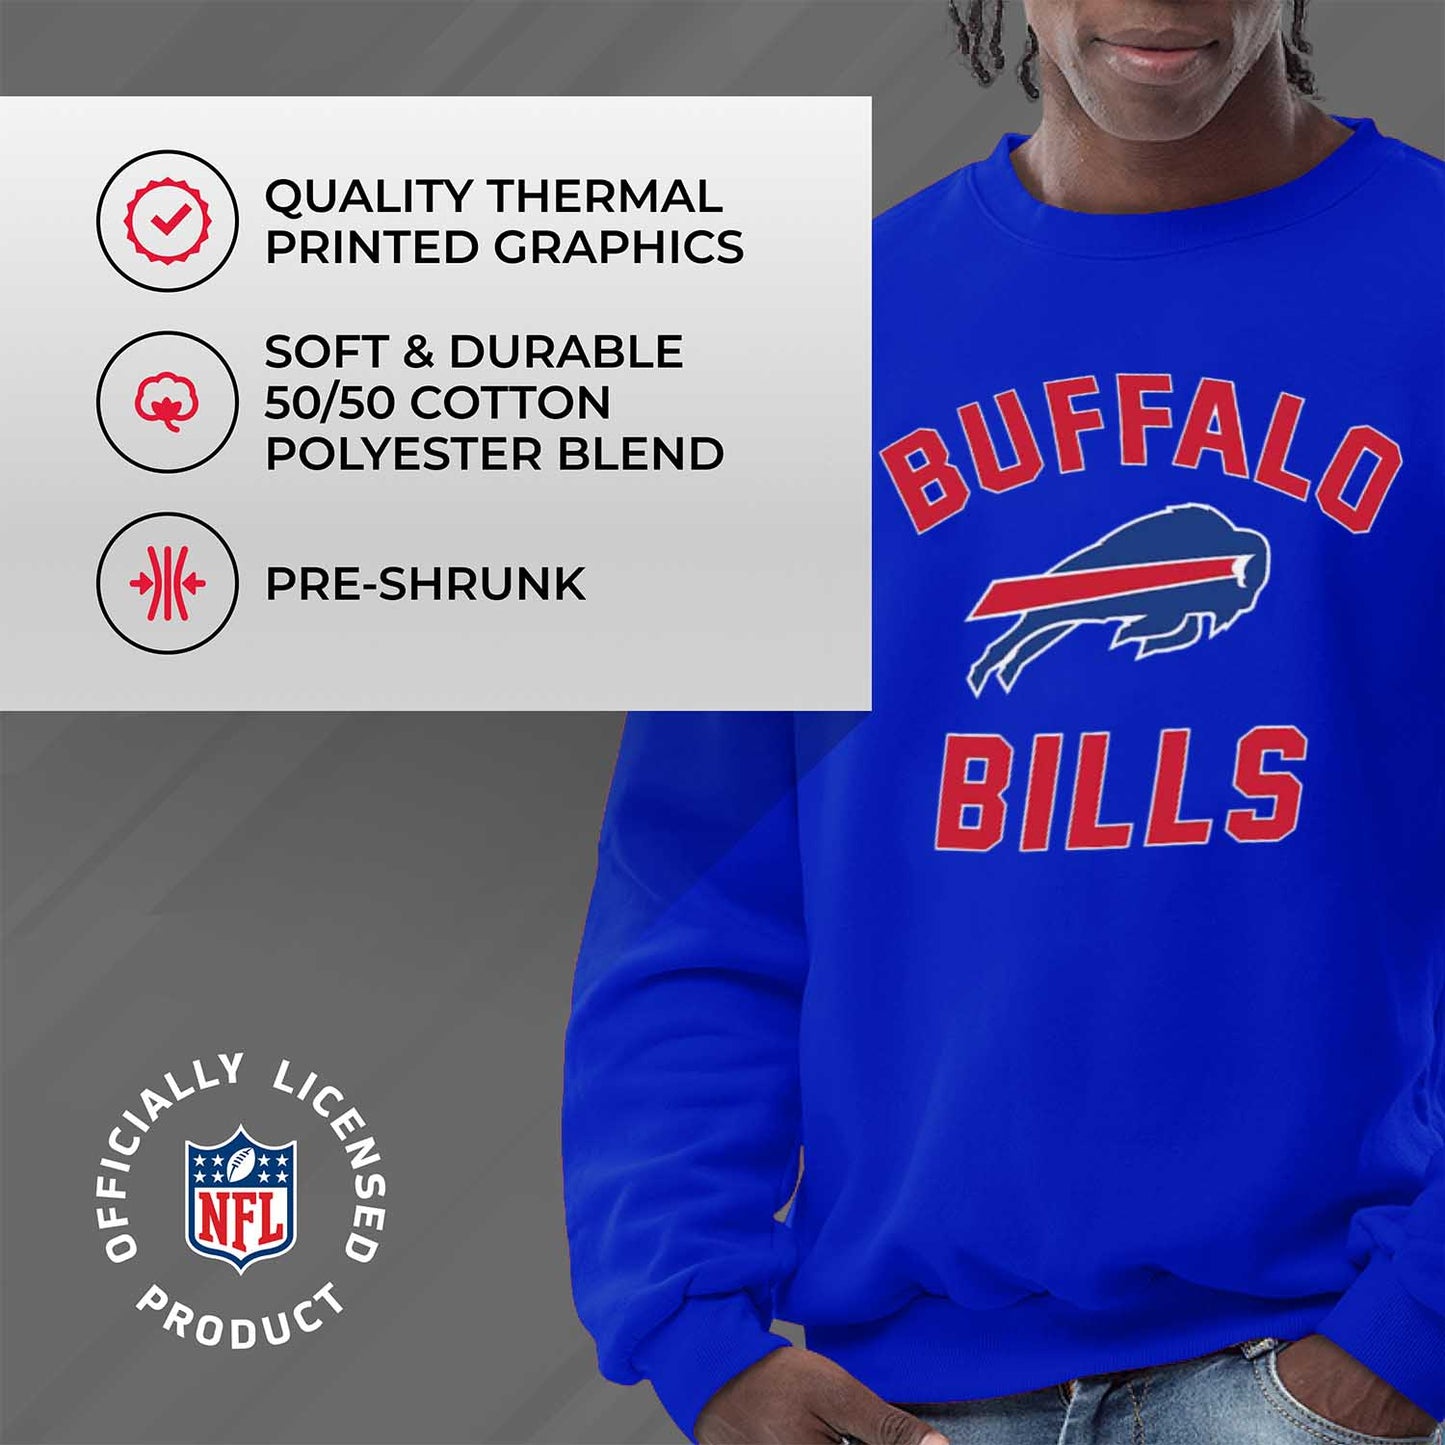 Buffalo Bills NFL Adult Gameday Football Crewneck Sweatshirt - Royal